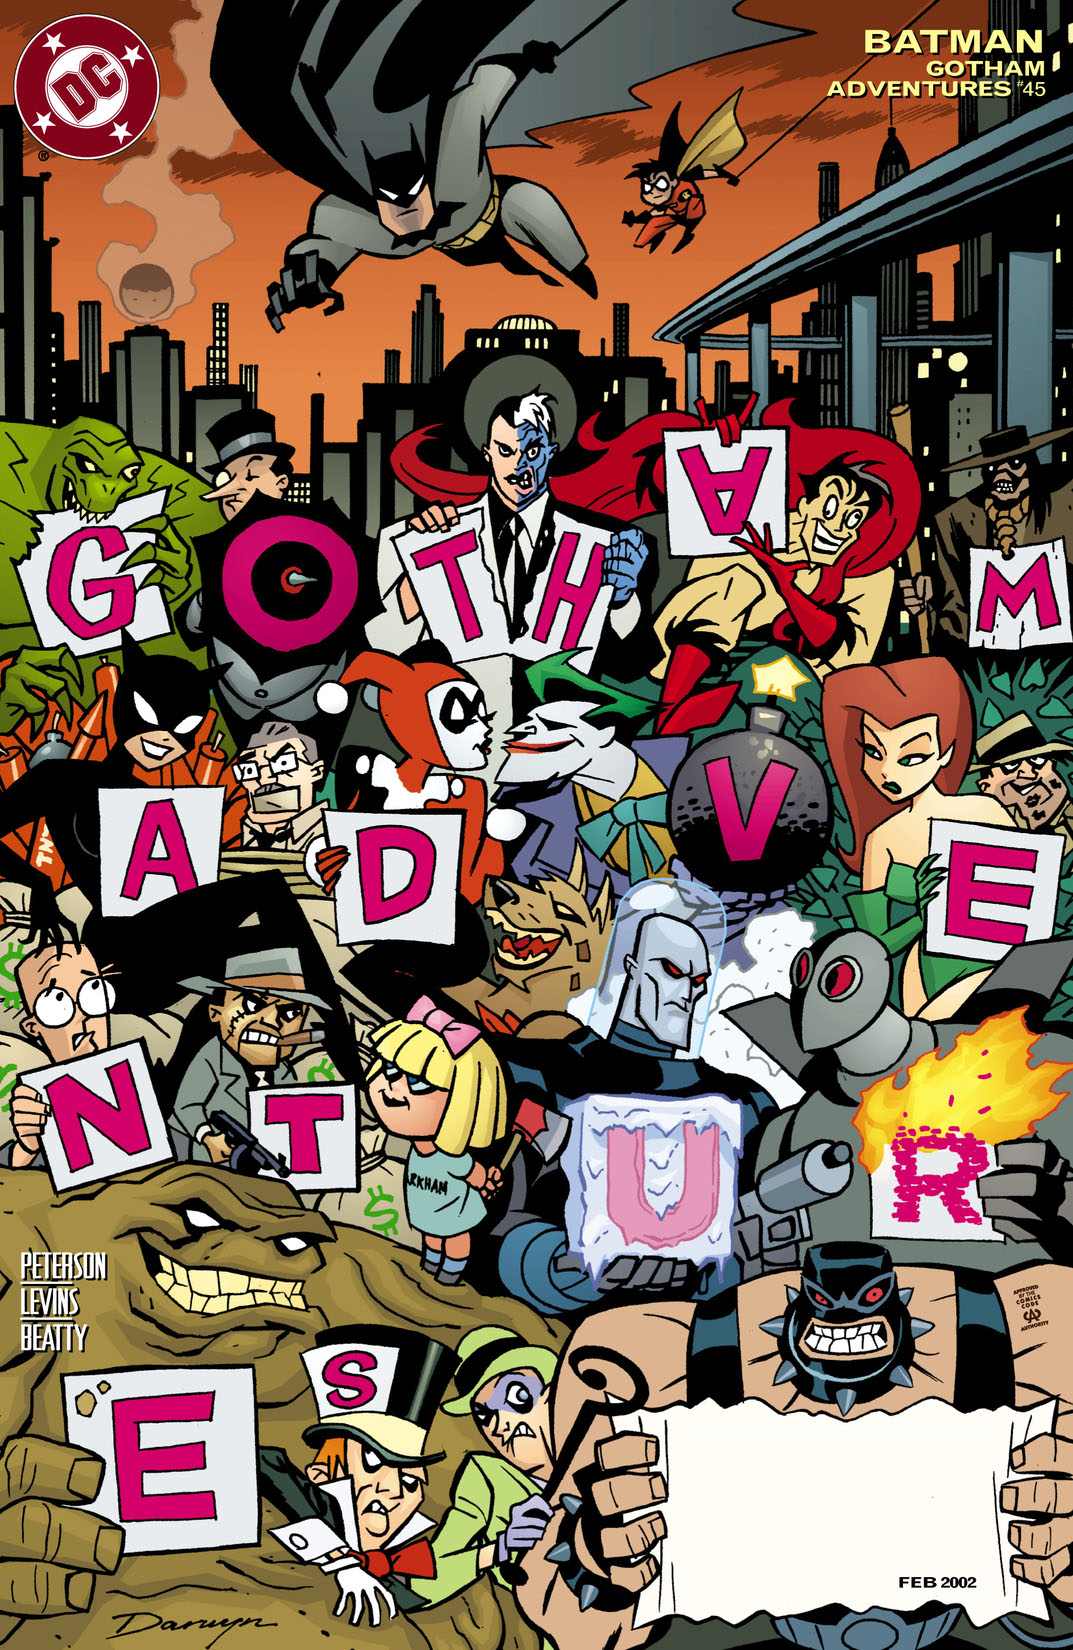 Batman: Gotham Adventures #45 preview images